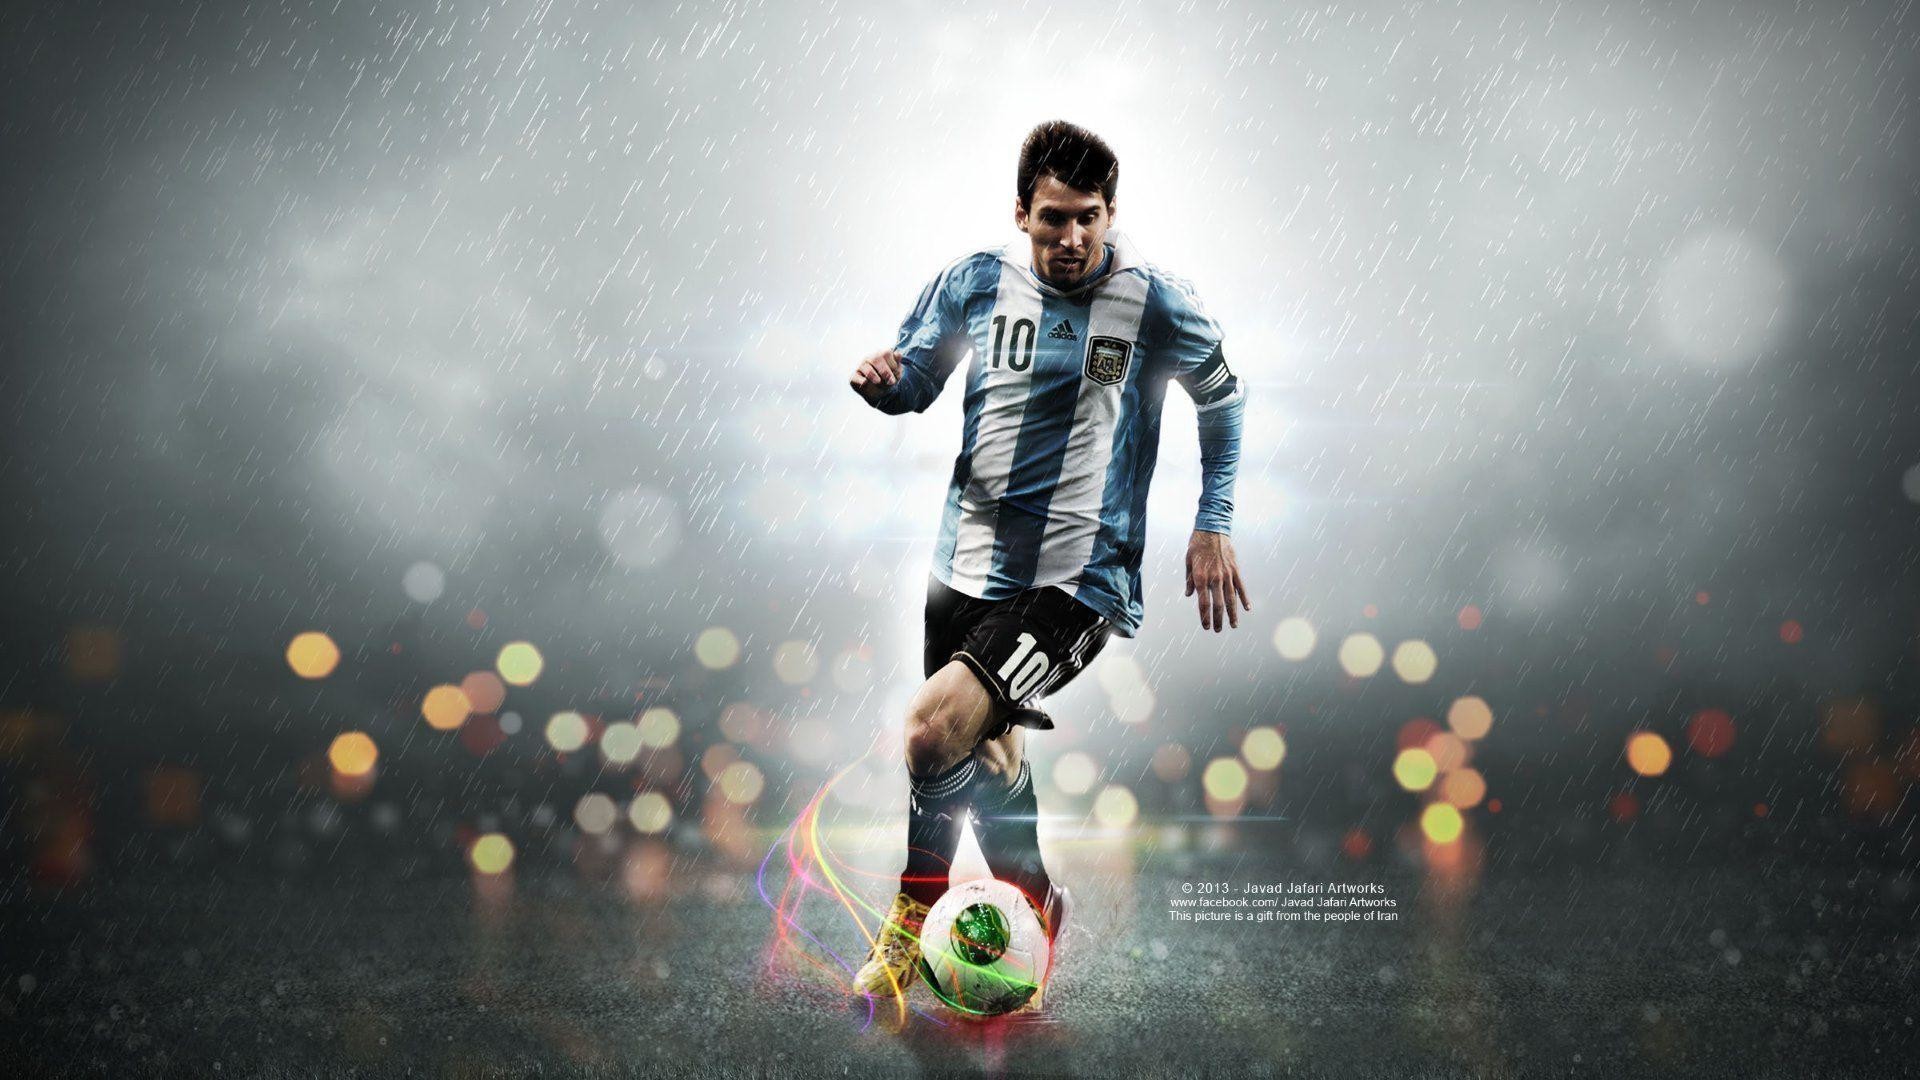 Lionel Messi được coi là một trong những cầu thủ vĩ đại nhất lịch sử bóng đá, với những pha đi bóng và ghi bàn kỳ thú. Nếu bạn là fan của Messi, đừng bỏ qua hình ảnh liên quan để chiêm ngưỡng tài năng và sự nghiệp huyền thoại của anh.